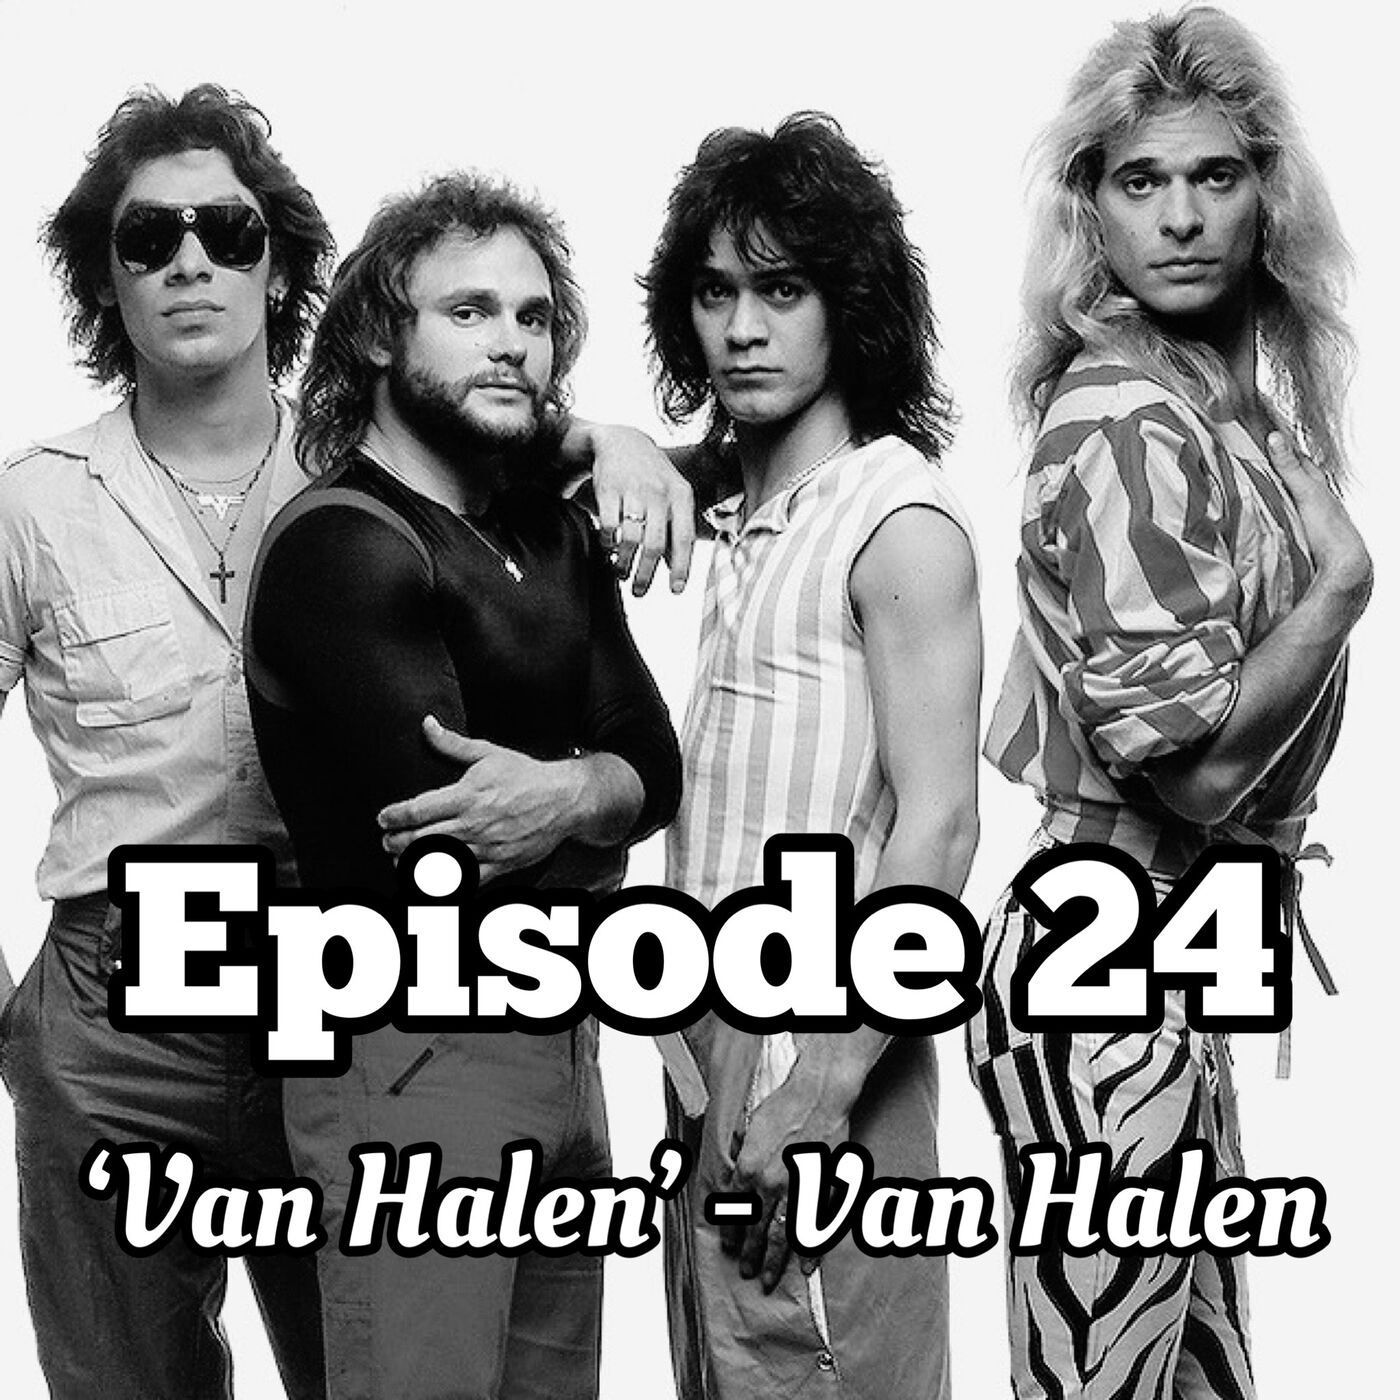 24. 'Van Halen' - Van Halen (1978)